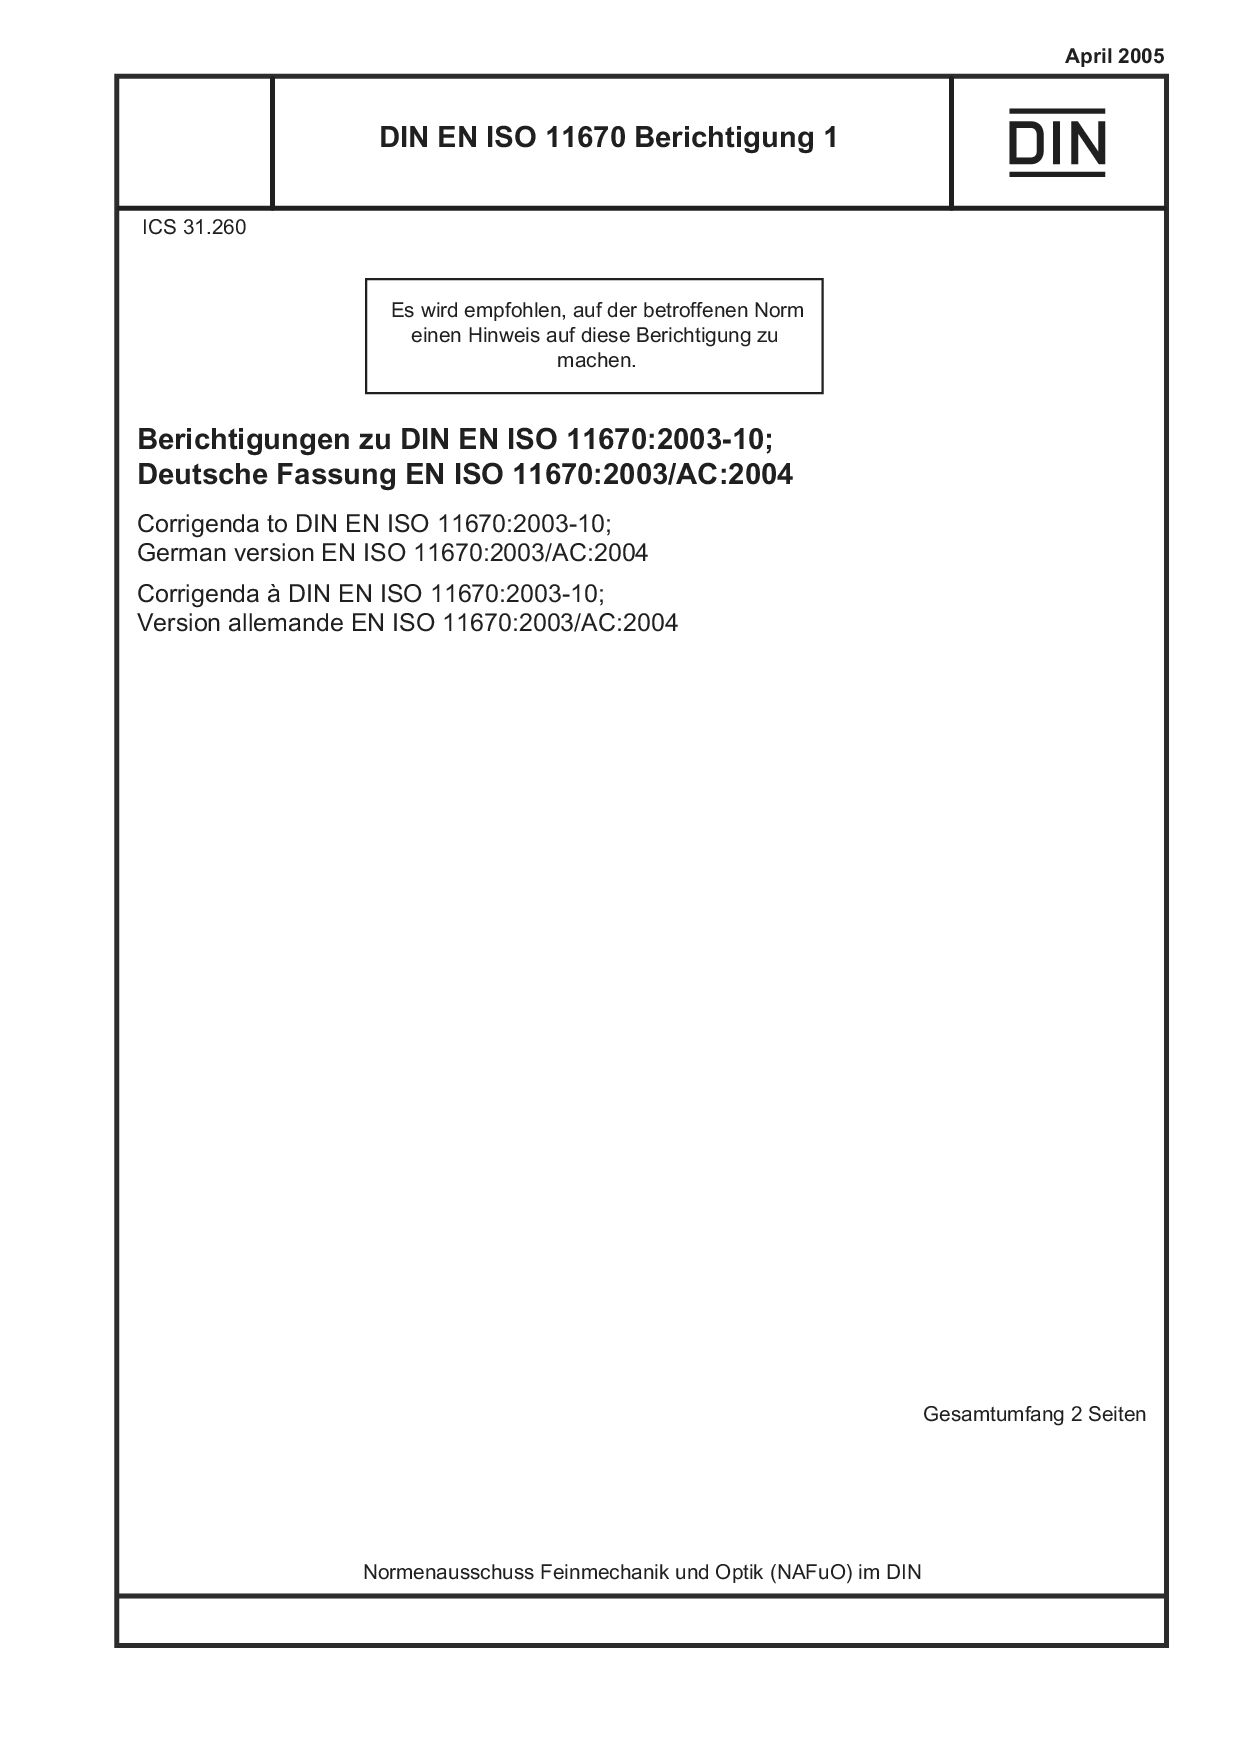 DIN EN ISO 11670 Berichtigung 1:2005